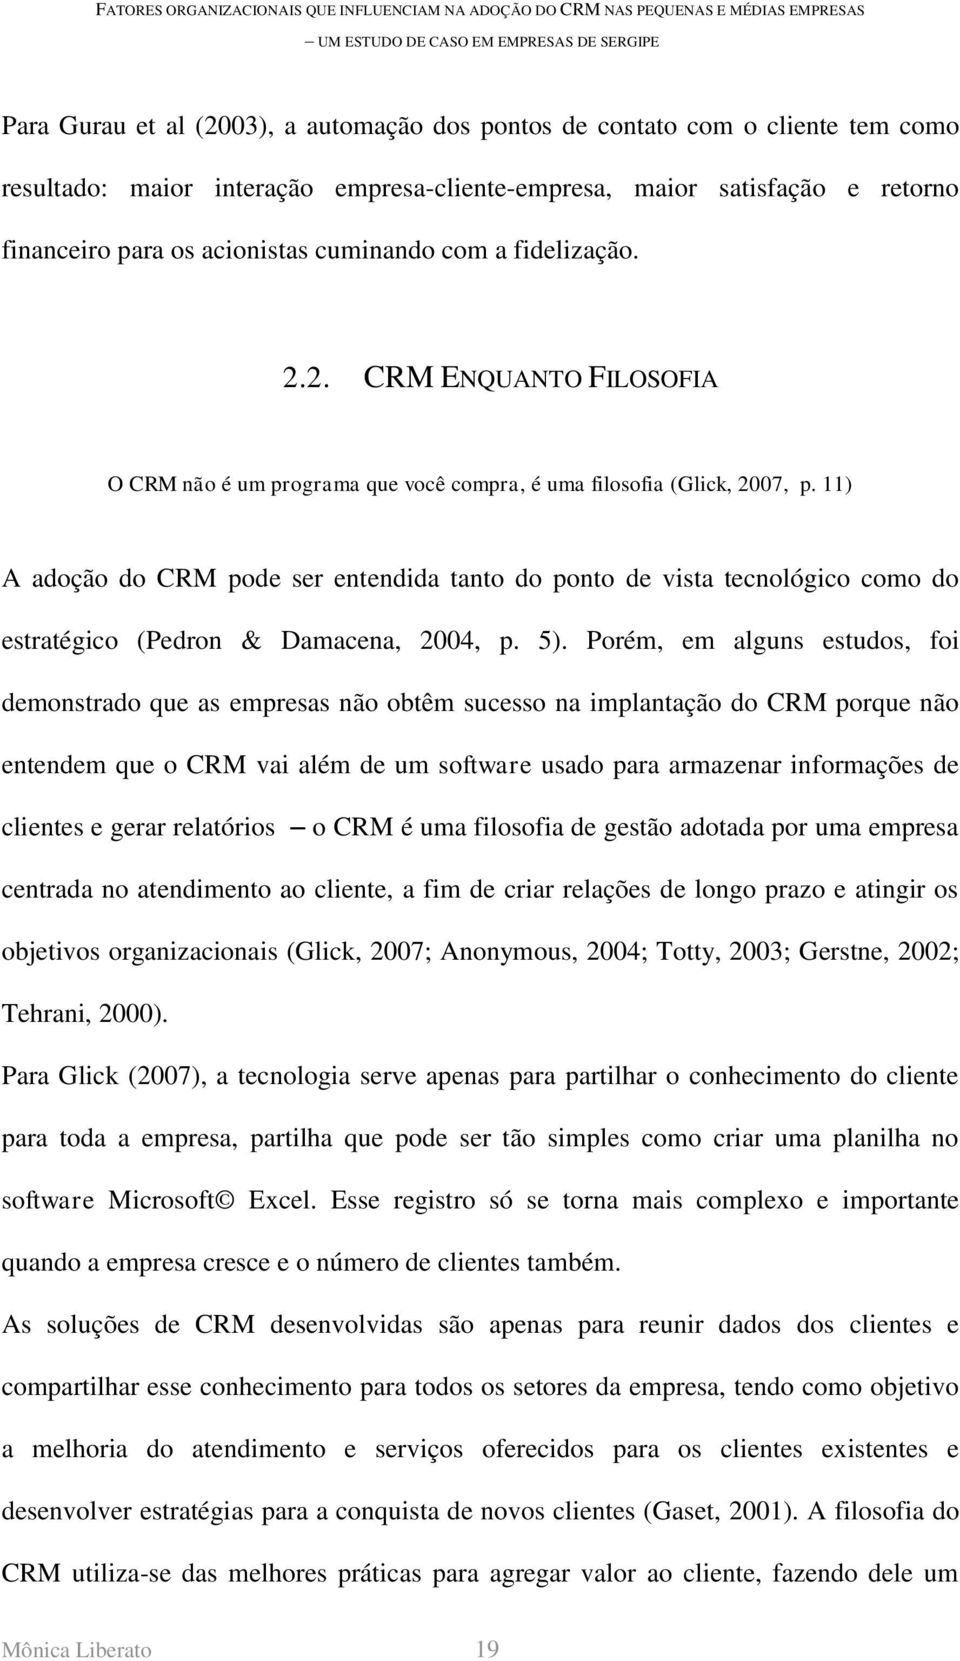 11) A adoção do CRM pode ser entendida tanto do ponto de vista tecnológico como do estratégico (Pedron & Damacena, 2004, p. 5).